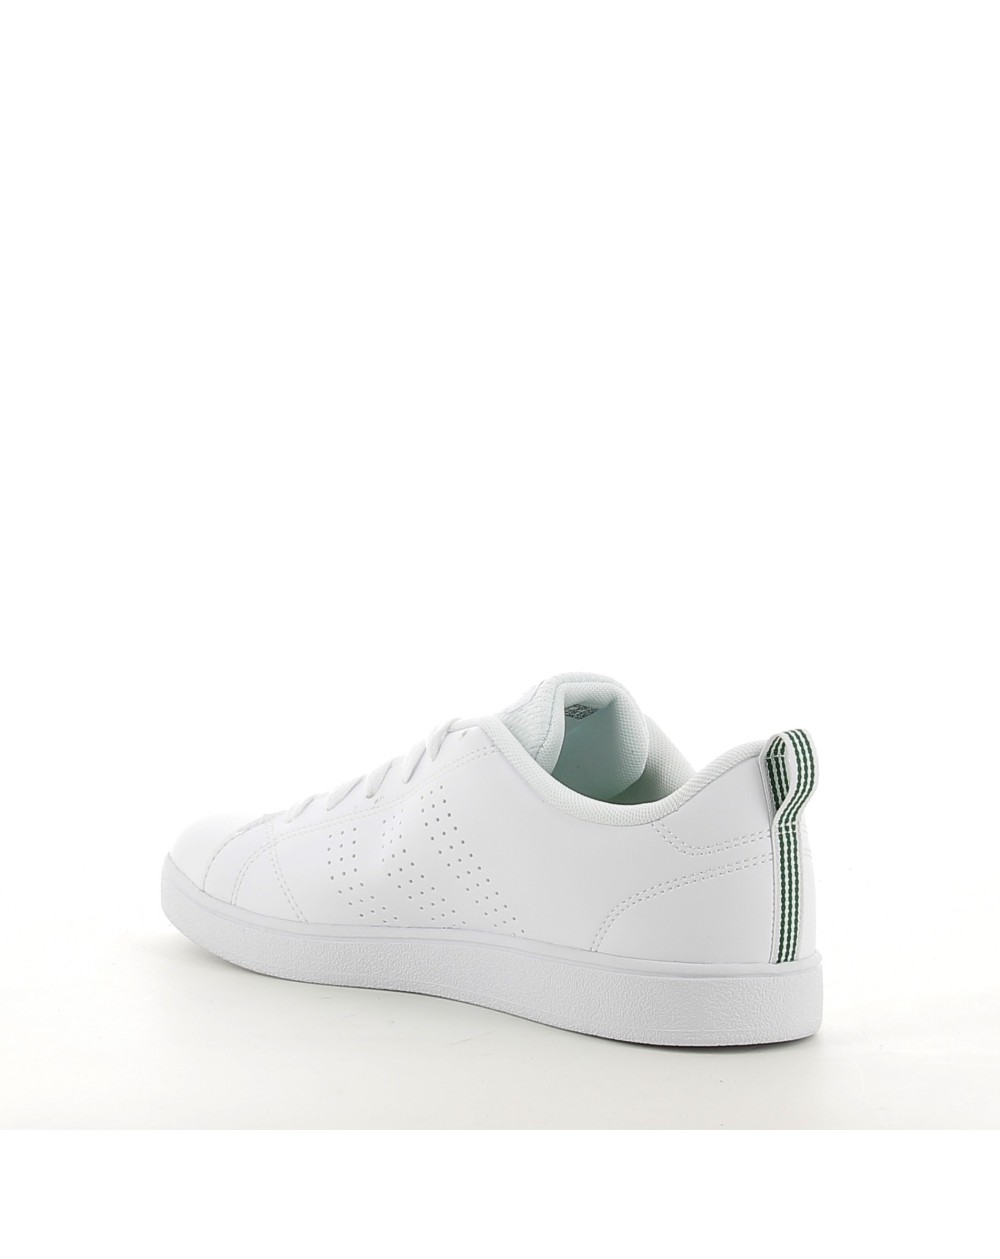 Sneakers Adidas VS CLEAN blanco. Zapatos